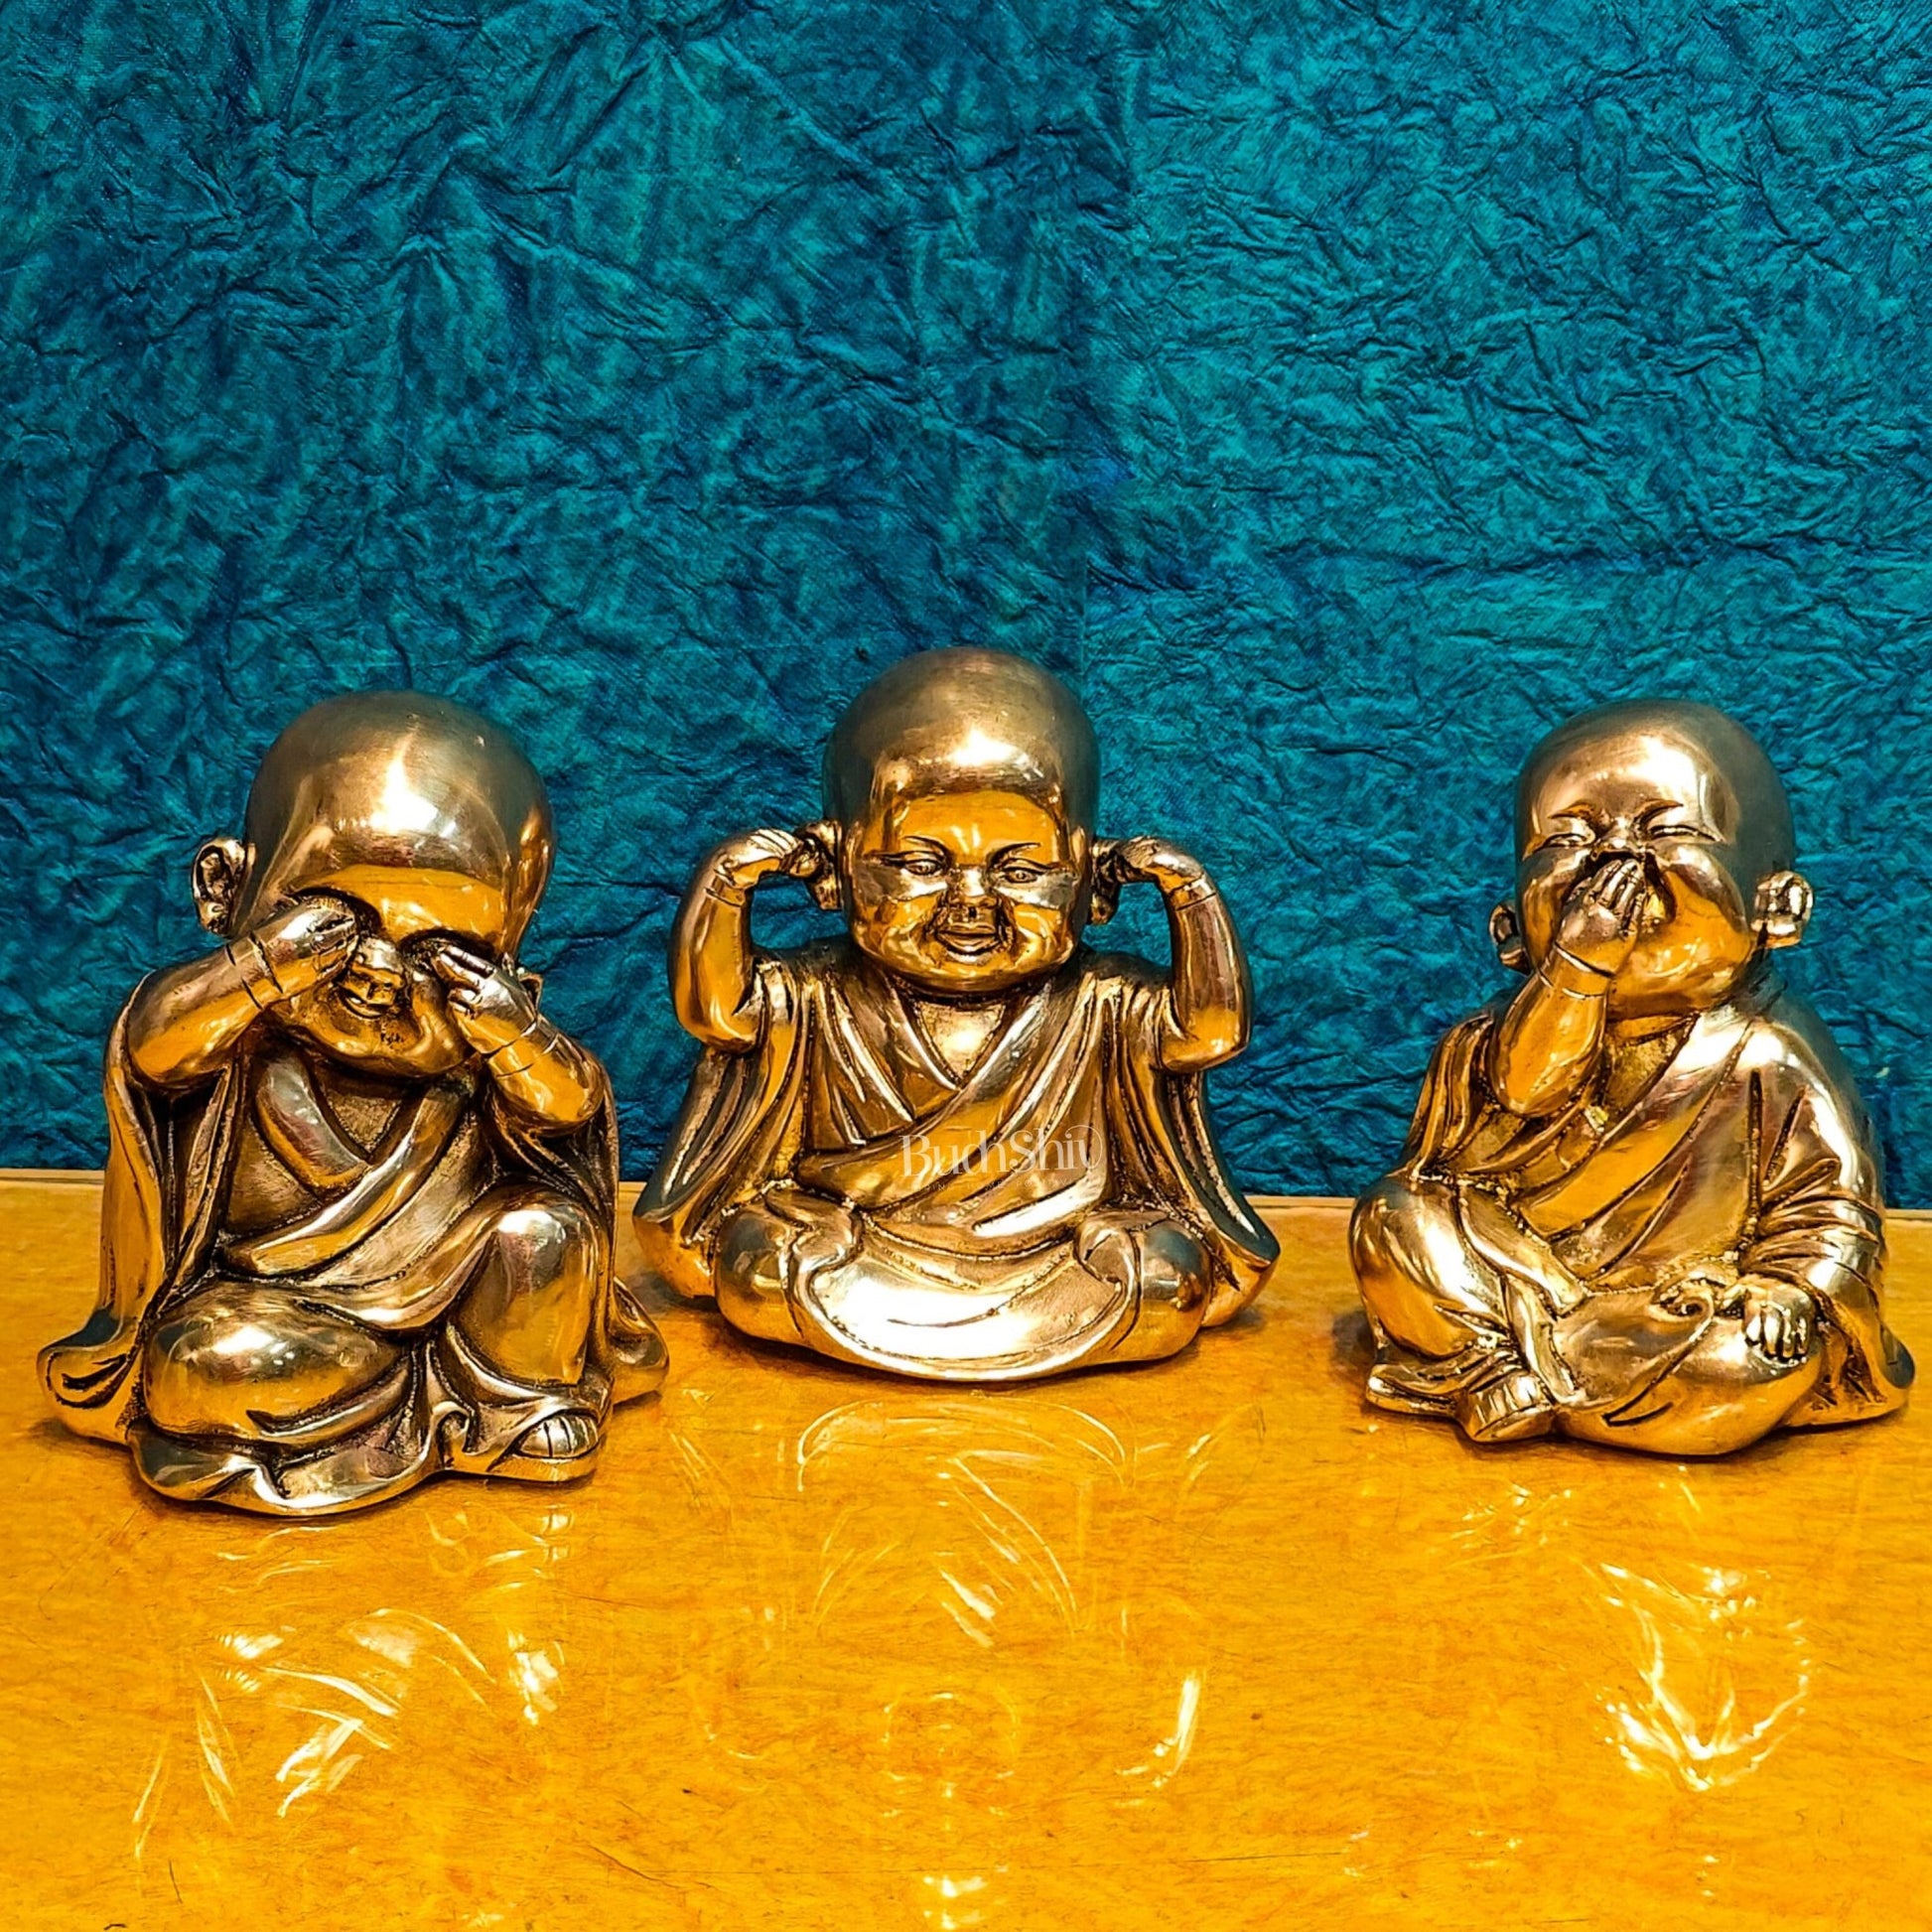 Baby Laughing Buddha monks - Budhshiv.com